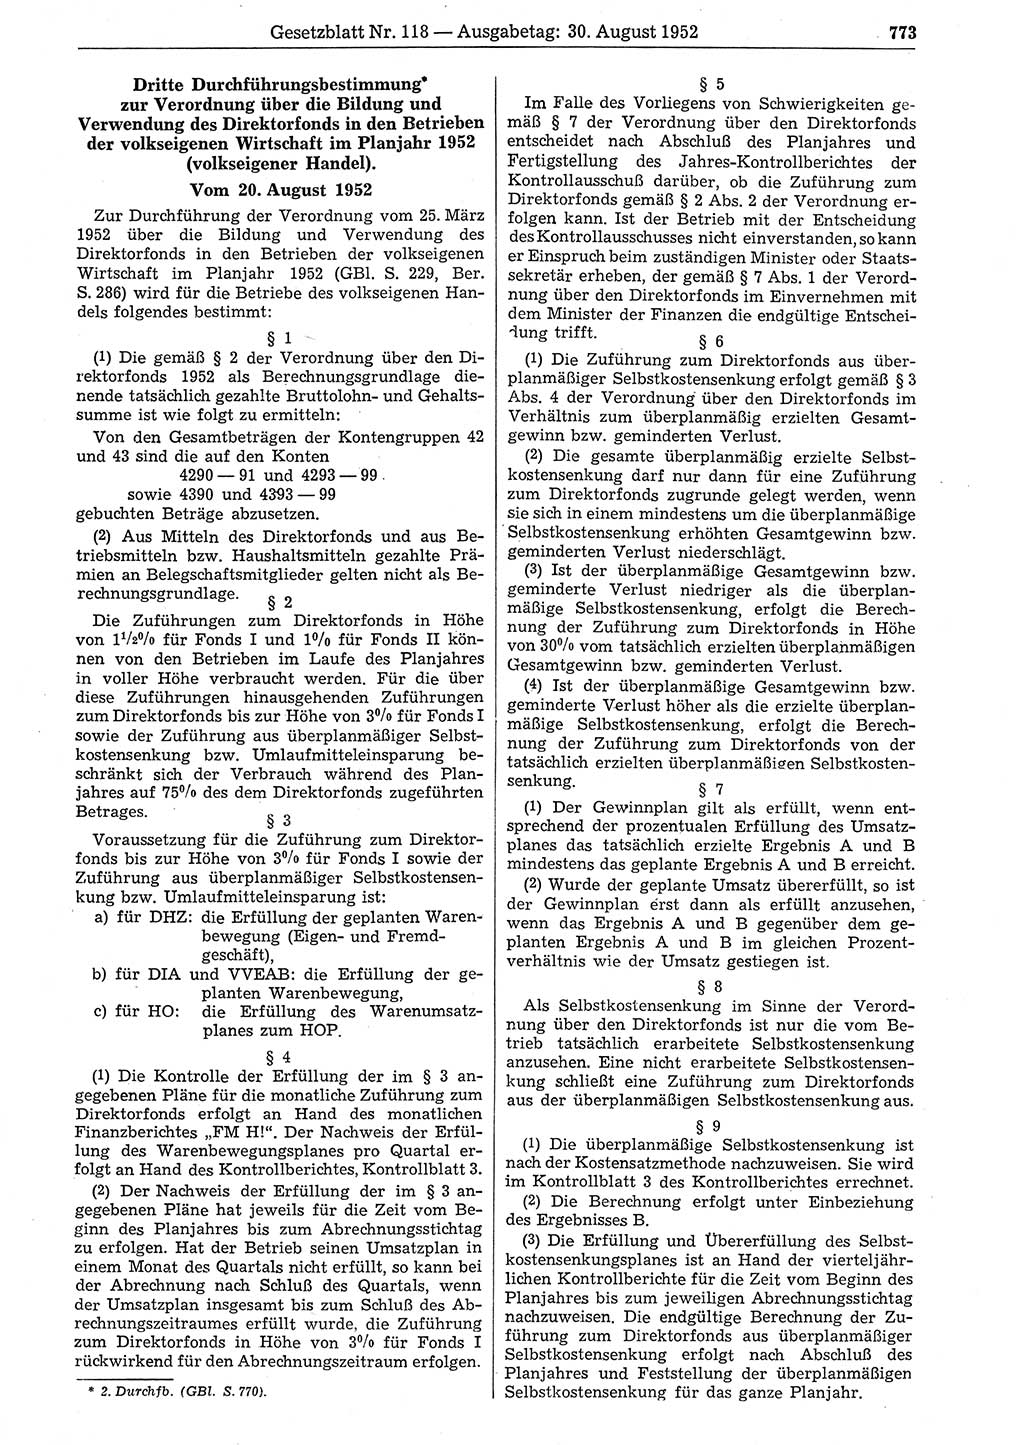 Gesetzblatt (GBl.) der Deutschen Demokratischen Republik (DDR) 1952, Seite 773 (GBl. DDR 1952, S. 773)